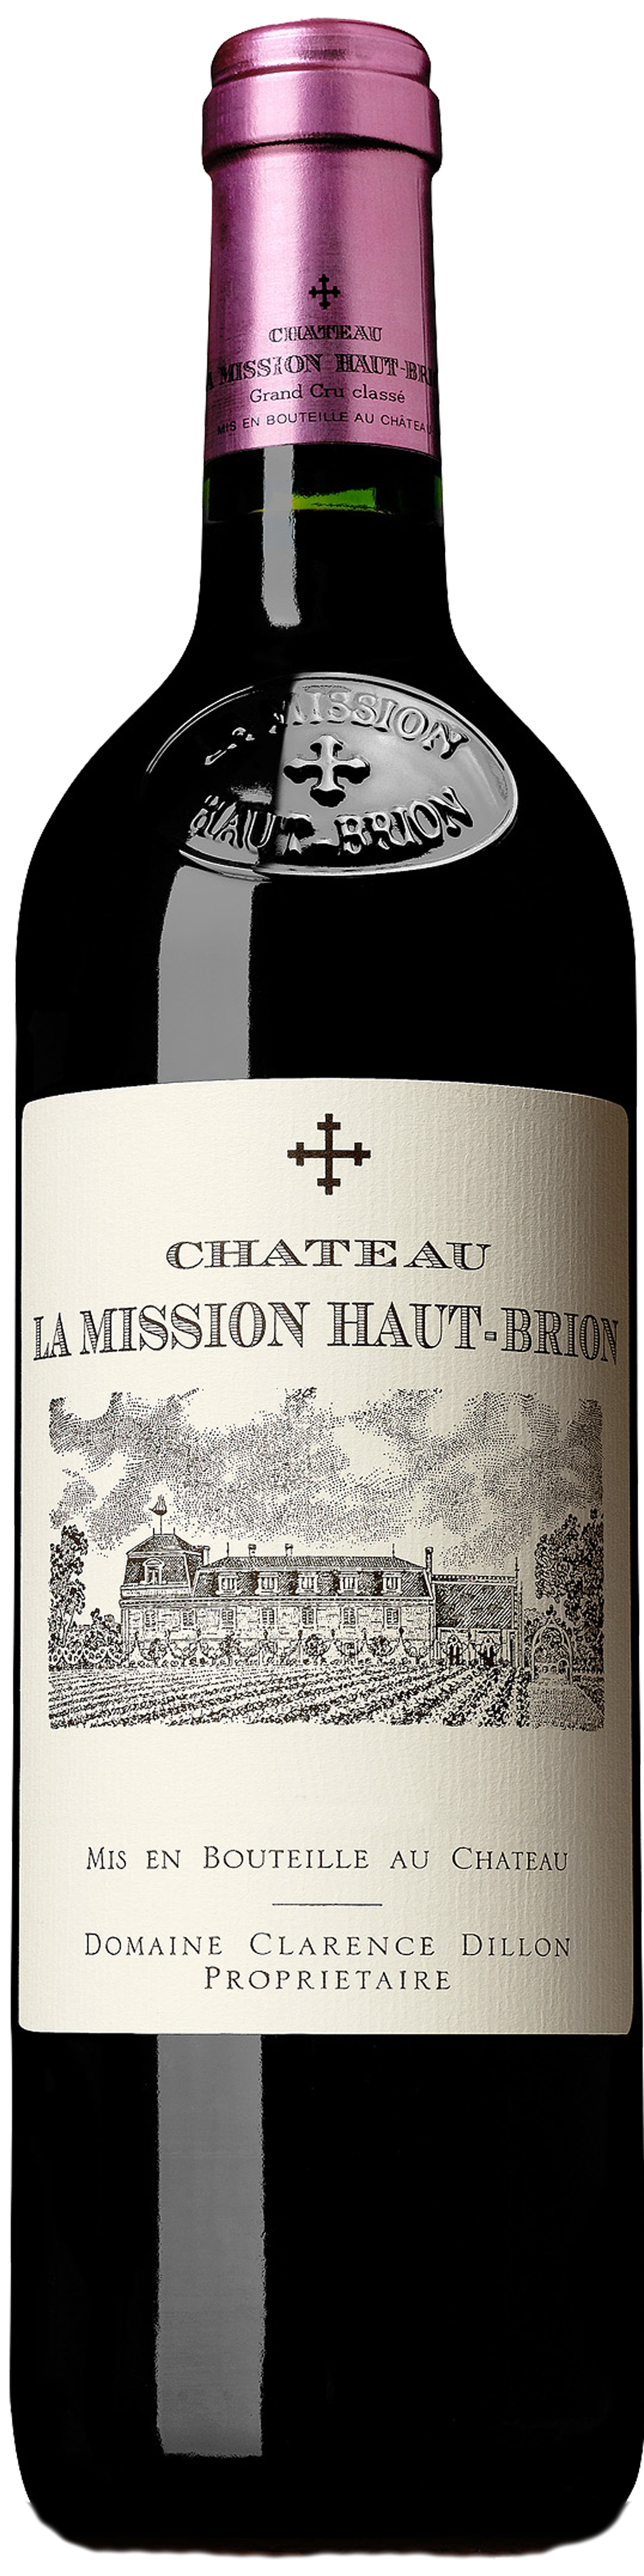 Bottle shot of 2016 Château La Mission Haut Brion, Cru Classé Graves